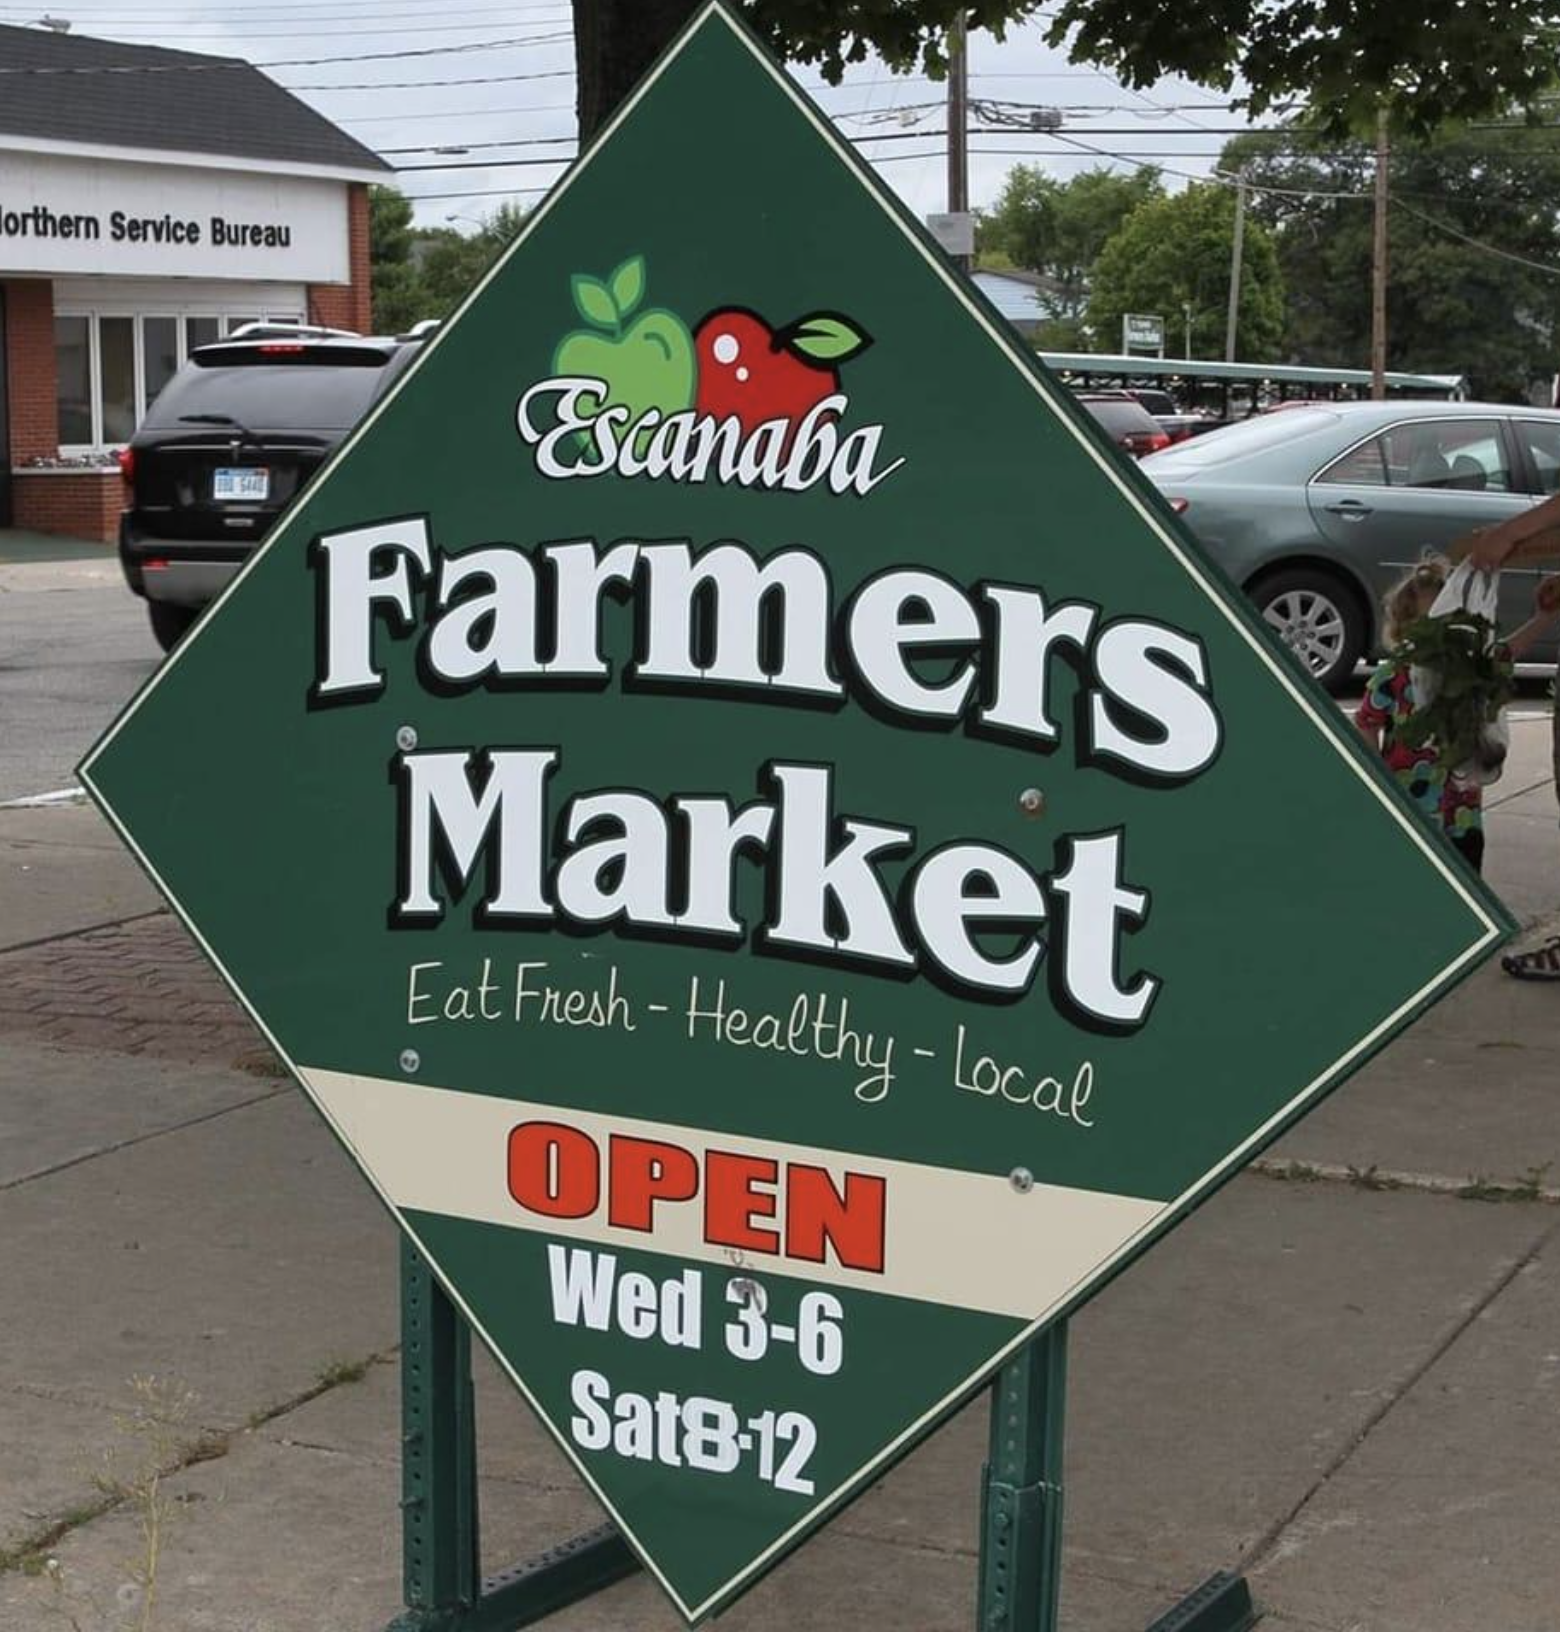 Escanaba Farmers Market